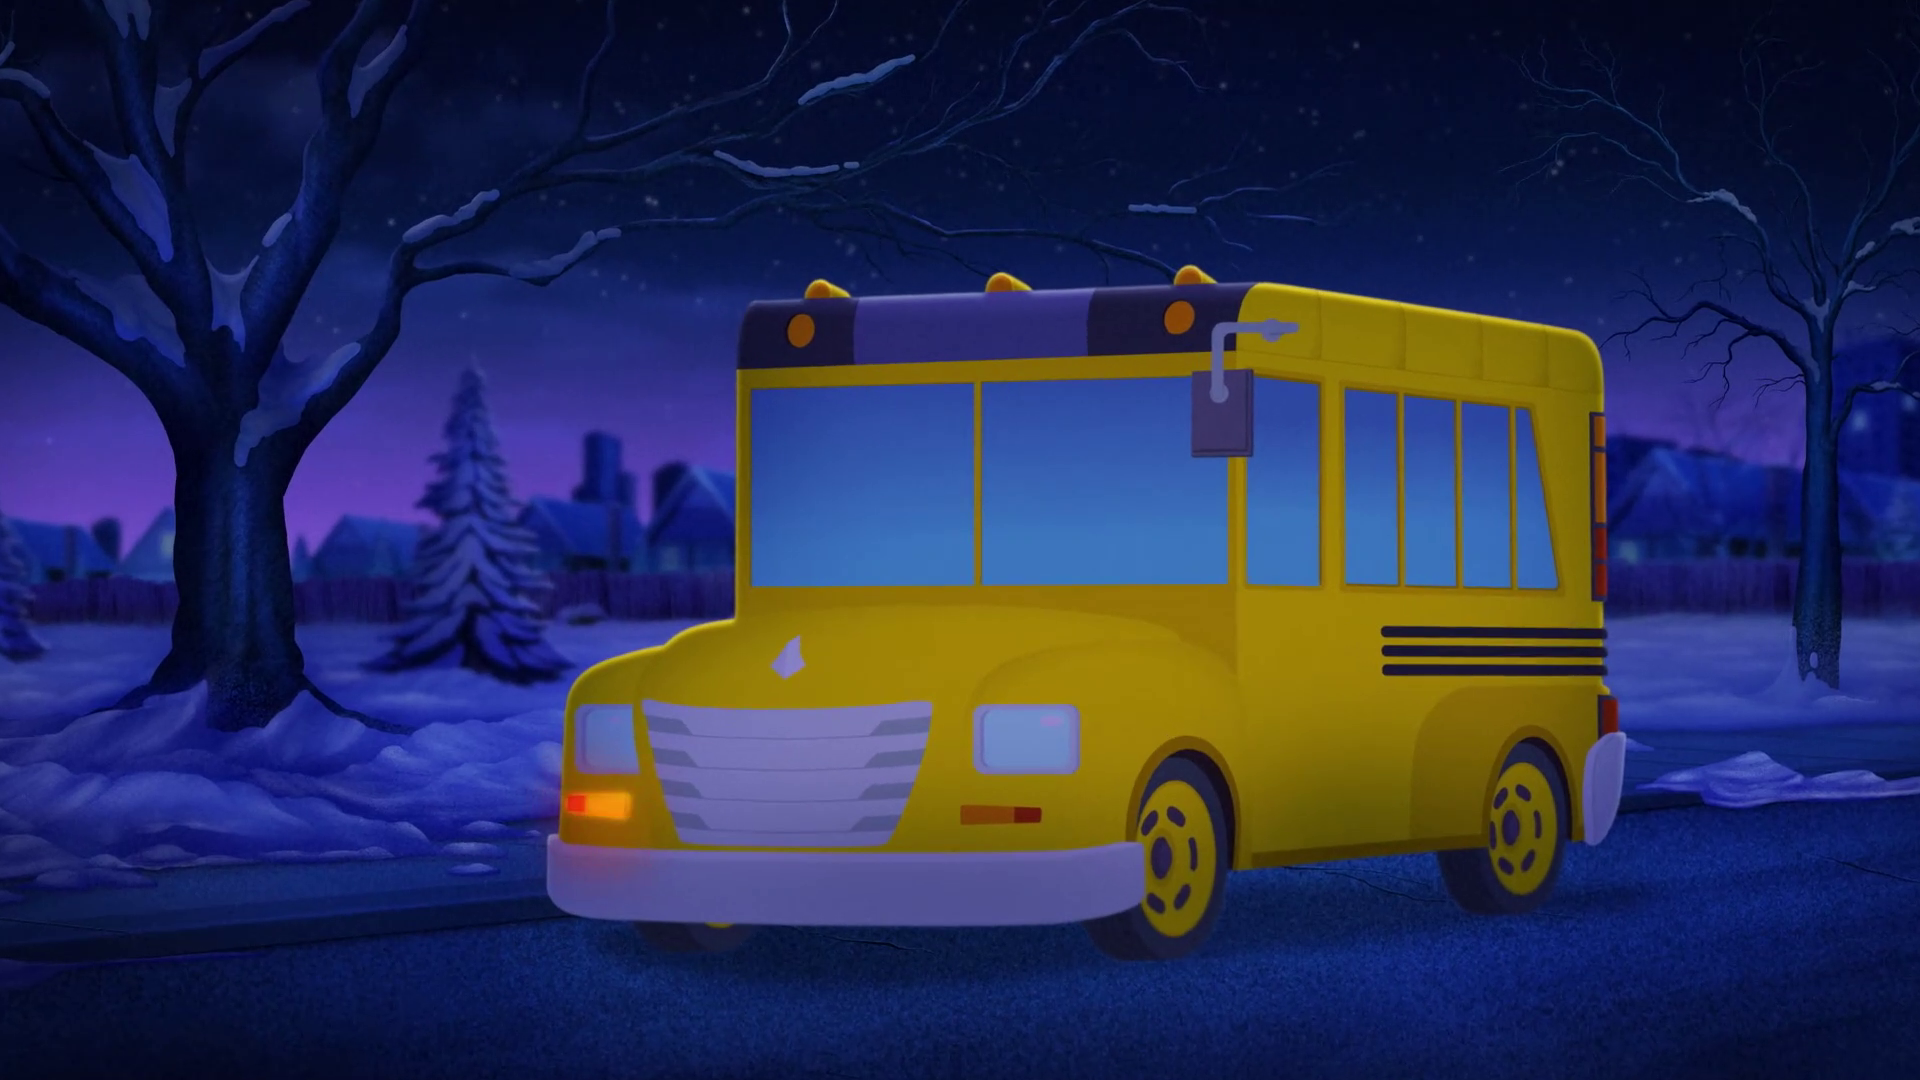 The Magic School Bus Vehicle The Magic School Bus Rides Again Wiki Fandom